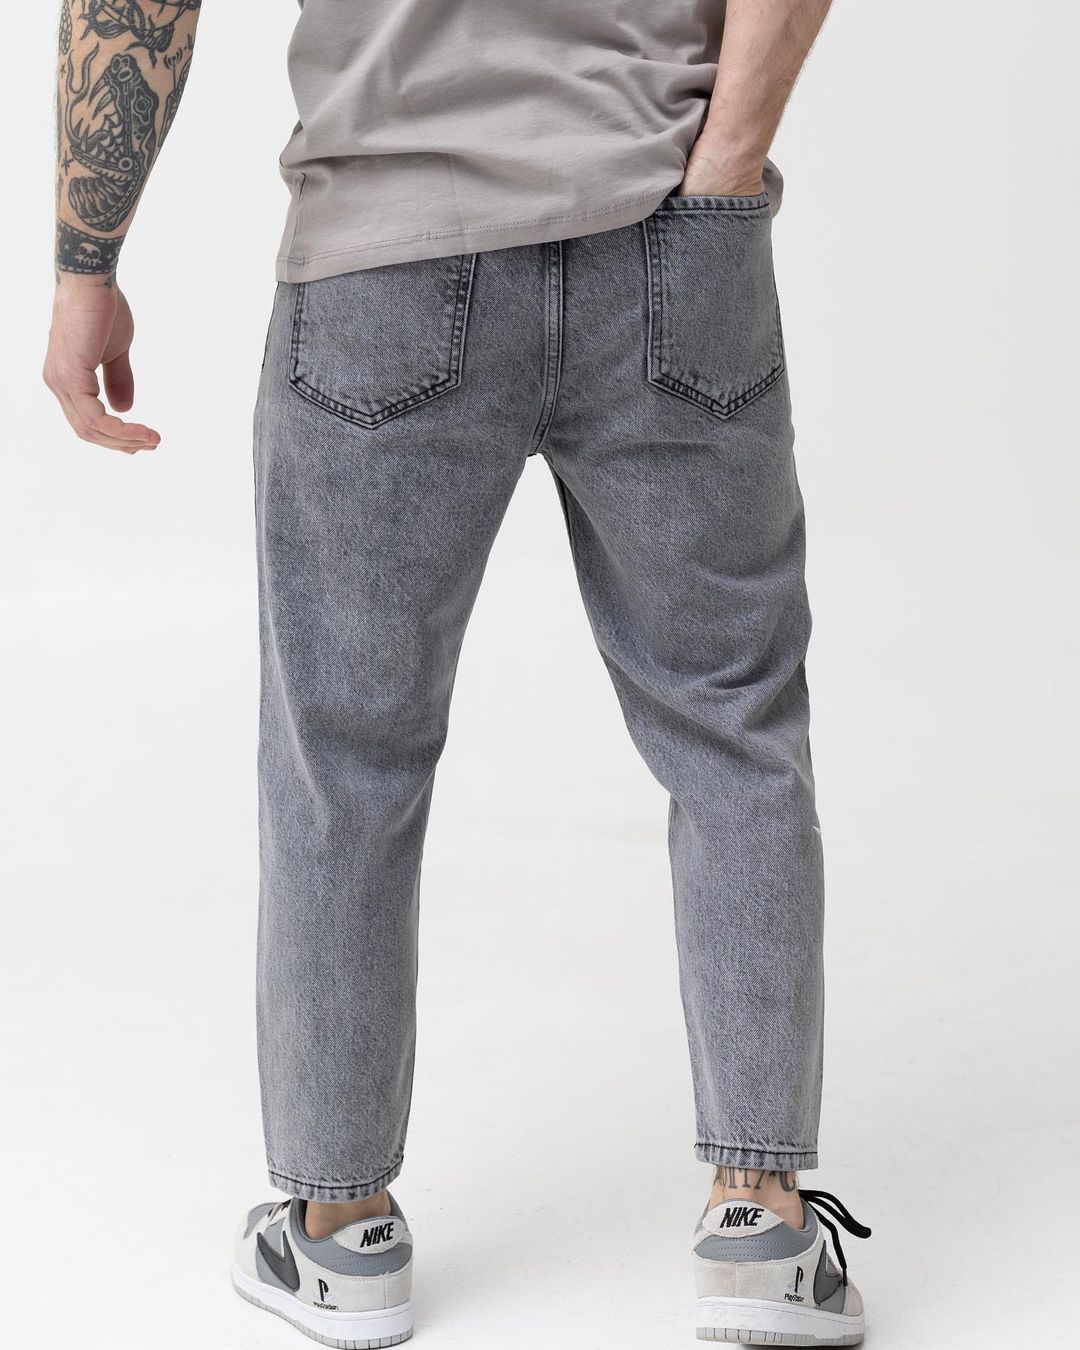 Чоловічі сірі джинси BEZET базові бойфренди - Фото 3